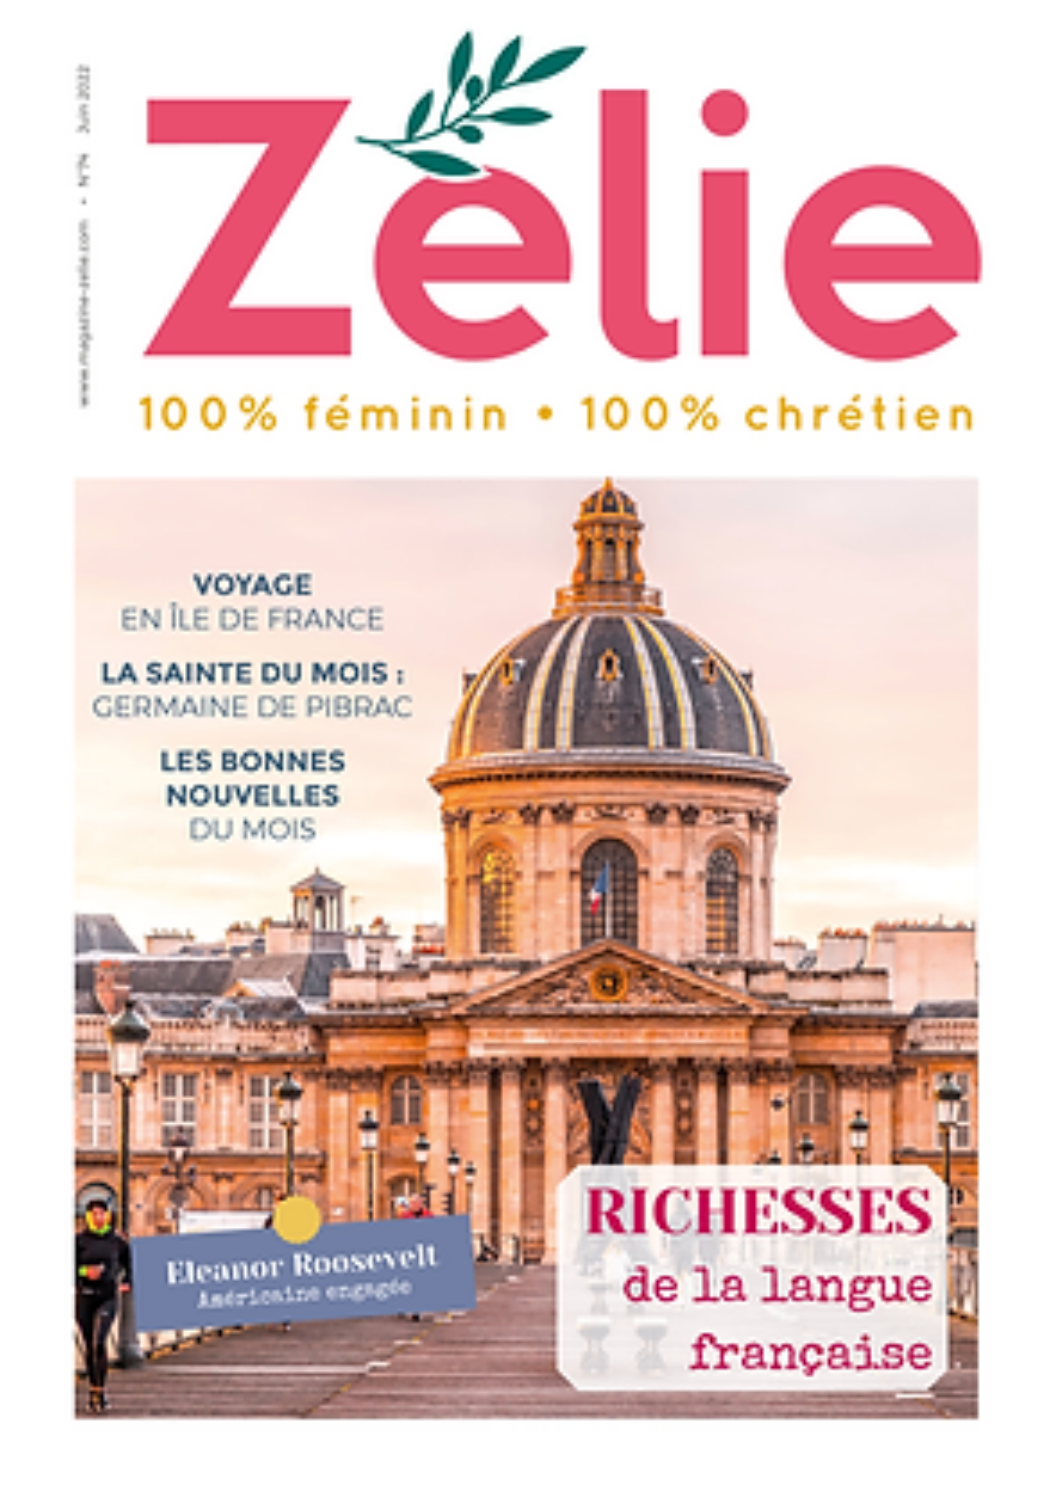 Le magazine Zélie  fête ses 7 ans !